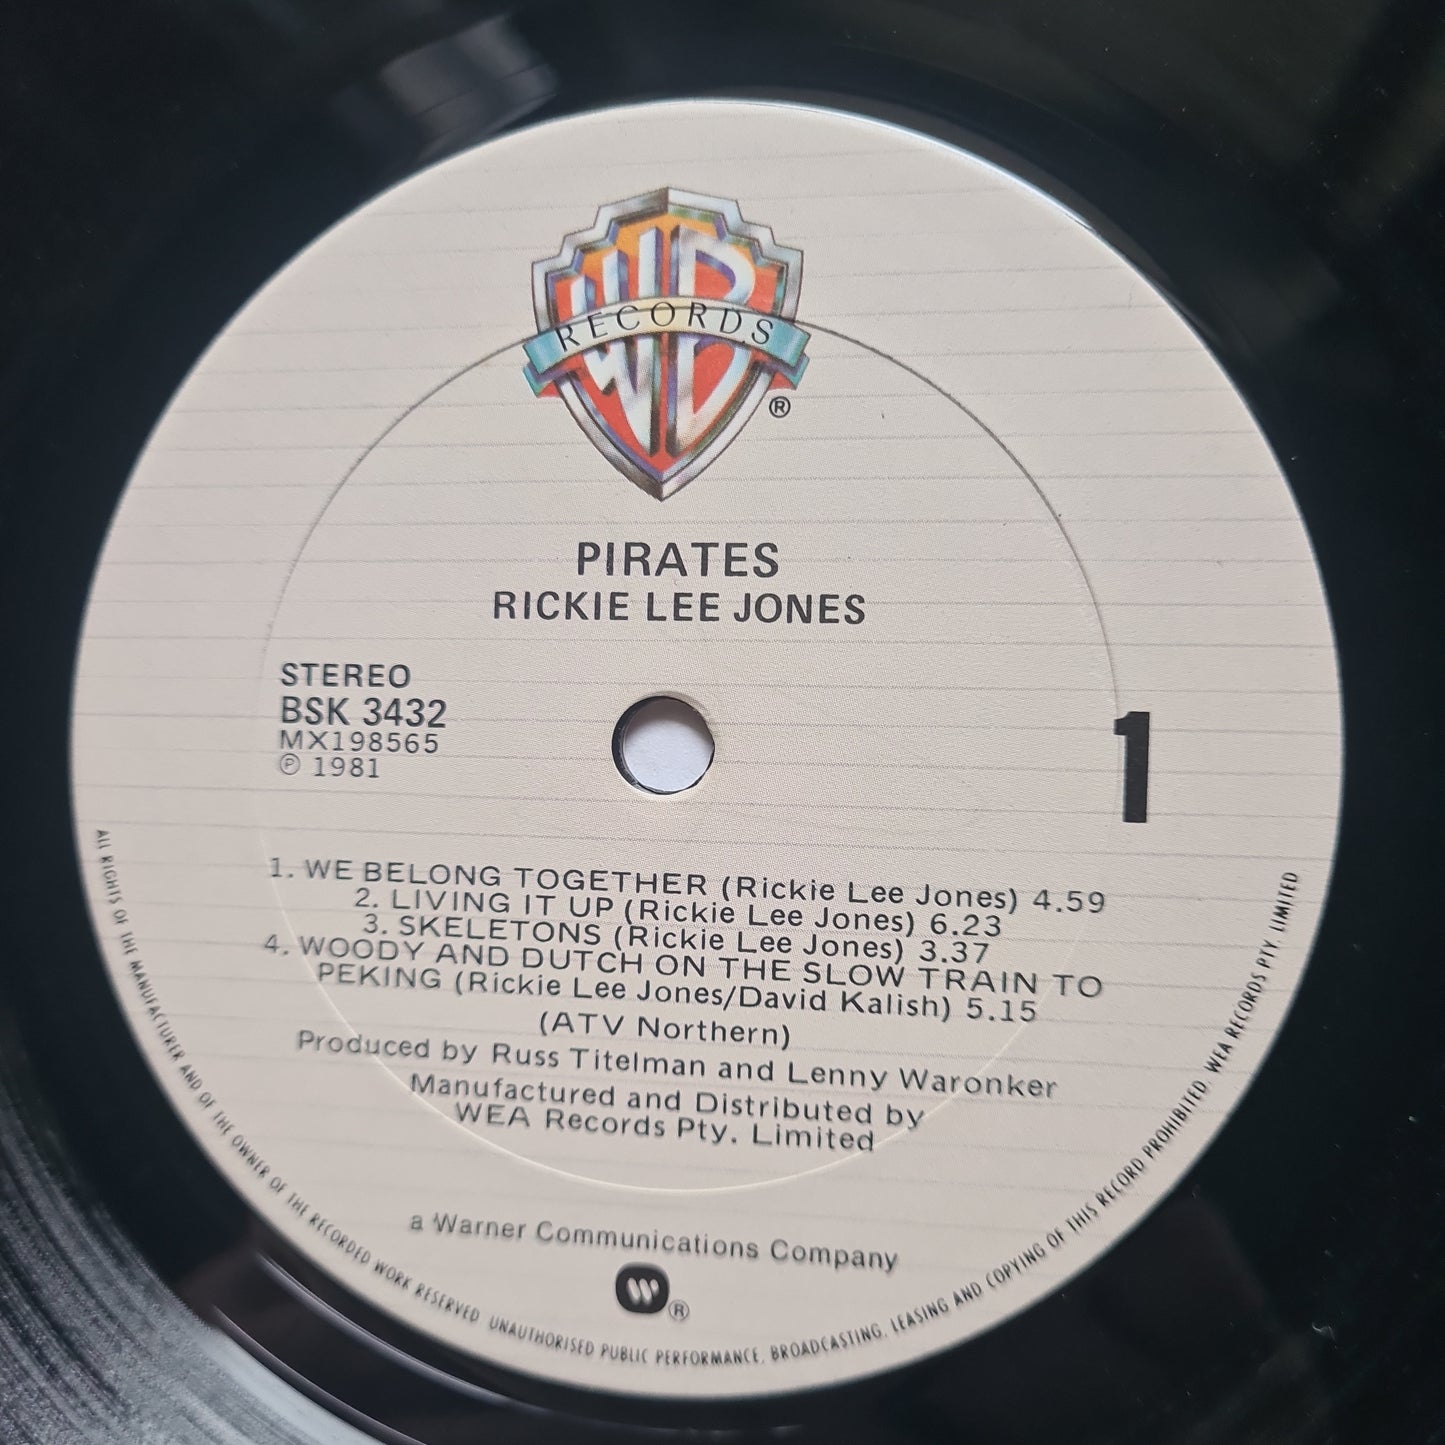 Rickie Lee Jones – Pirates - 1981 - Vinyl Record